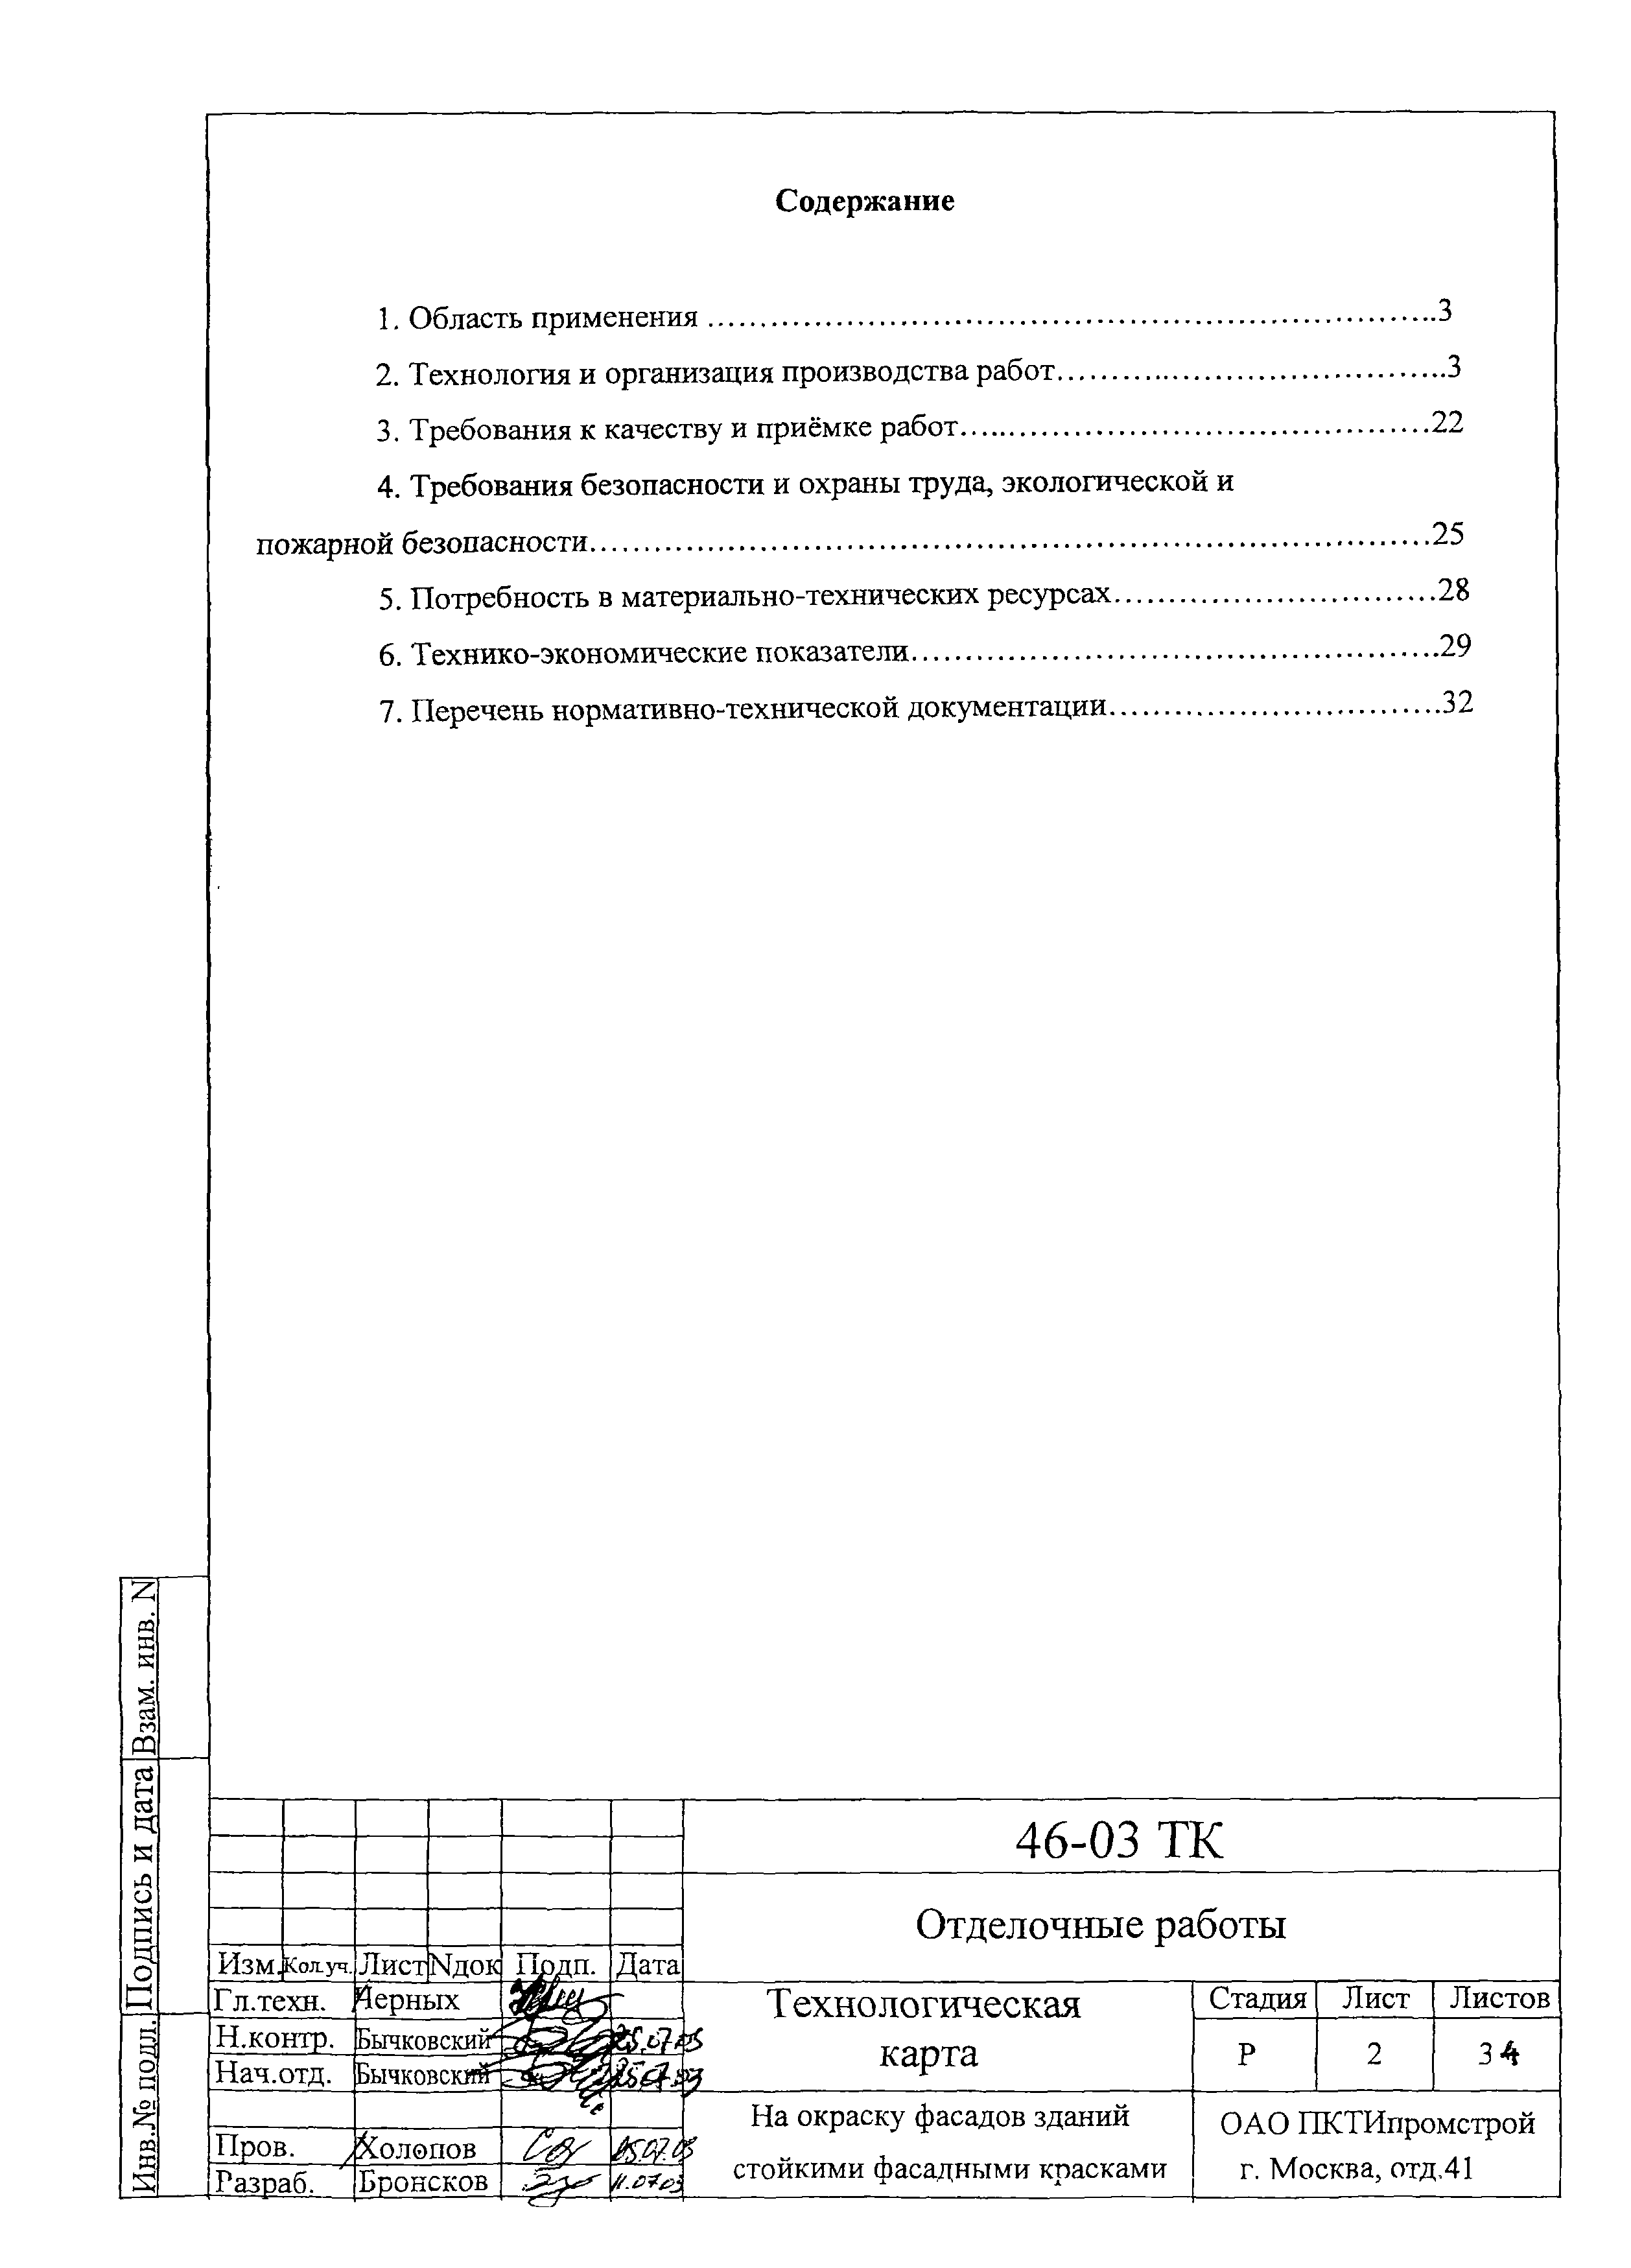 Технологическая карта 46-03 ТК